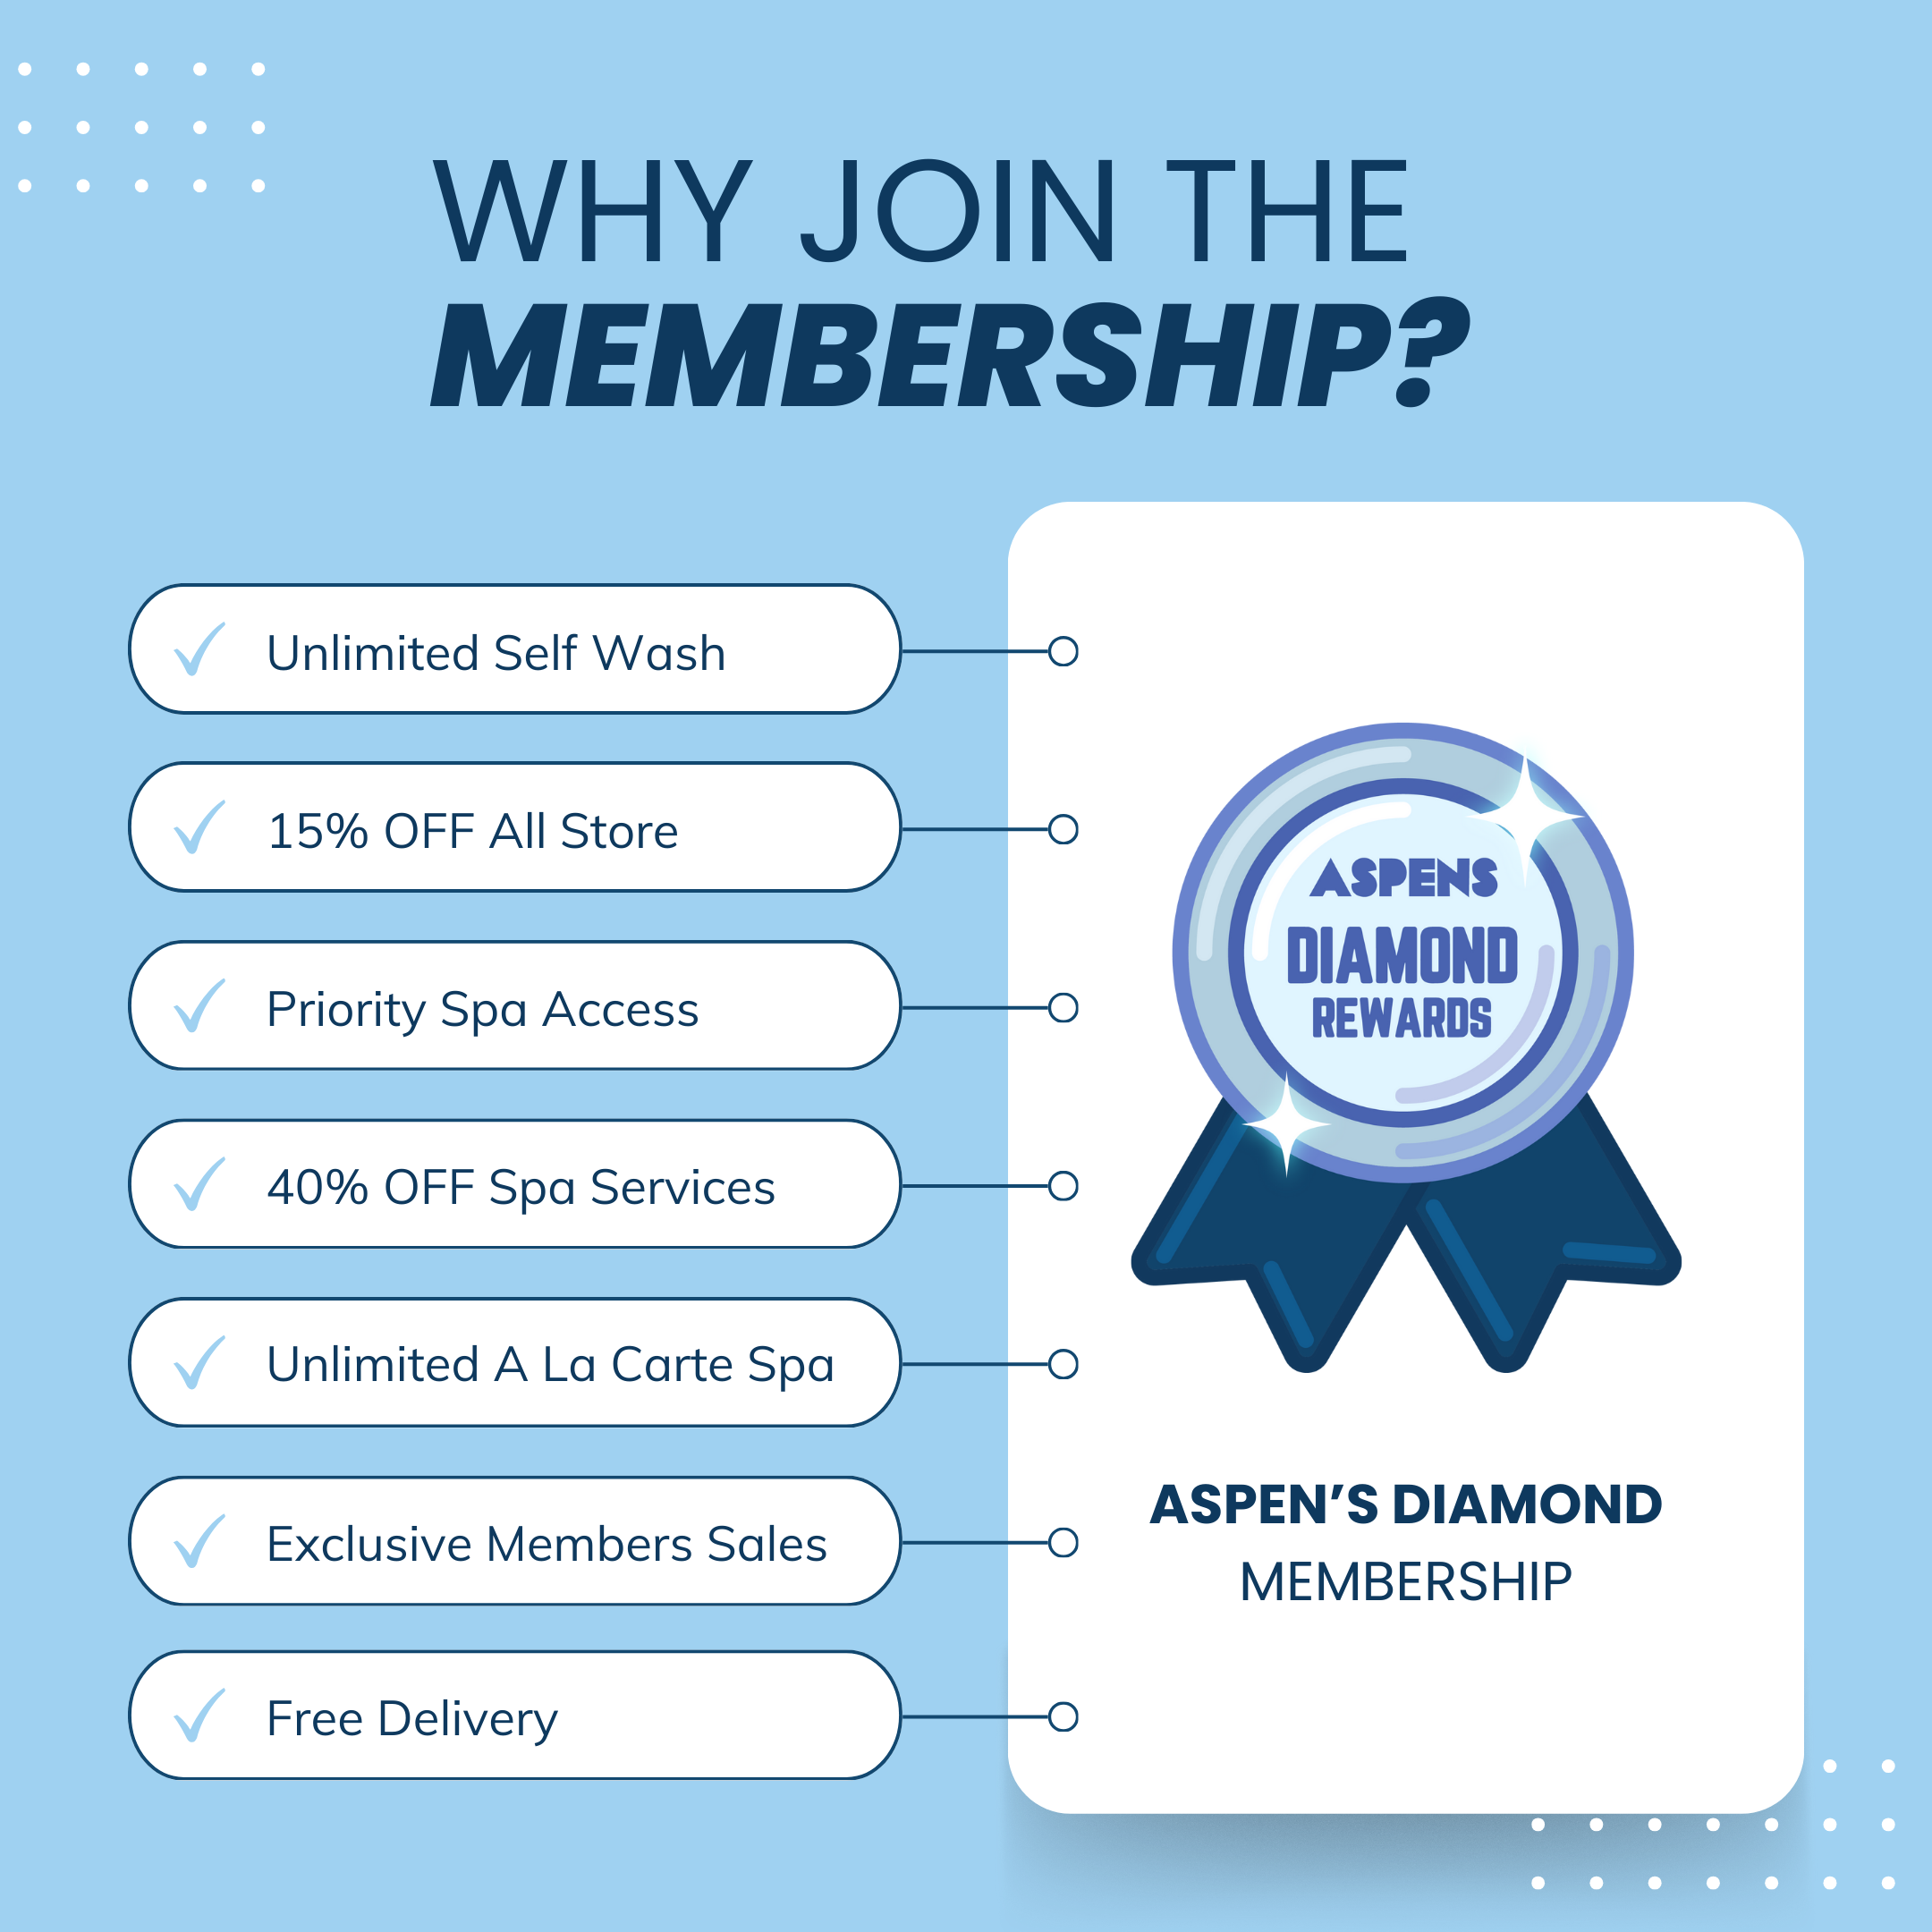 Aspens Diamond Membership Annually